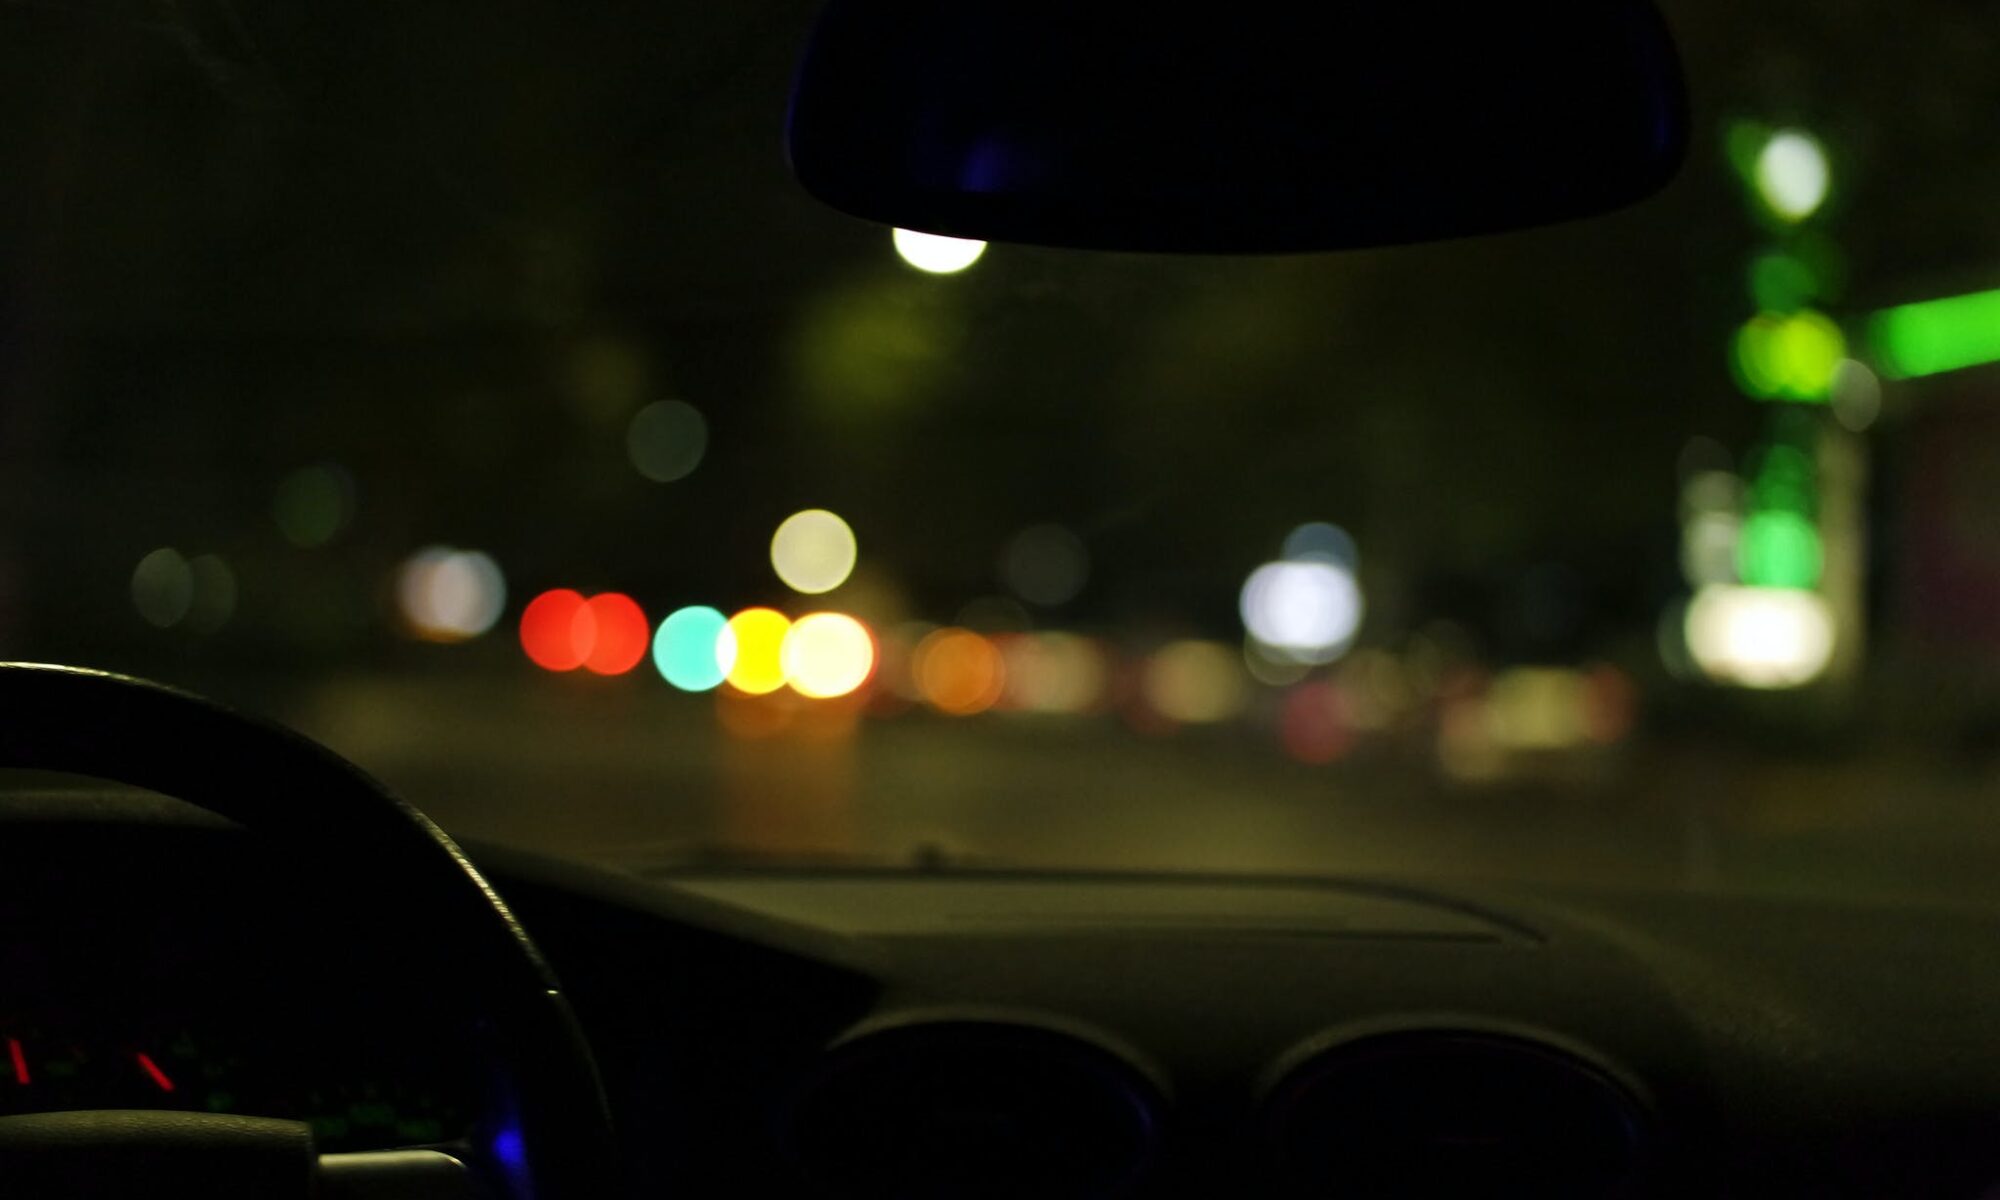 dash of a car at night at dui traffic stop